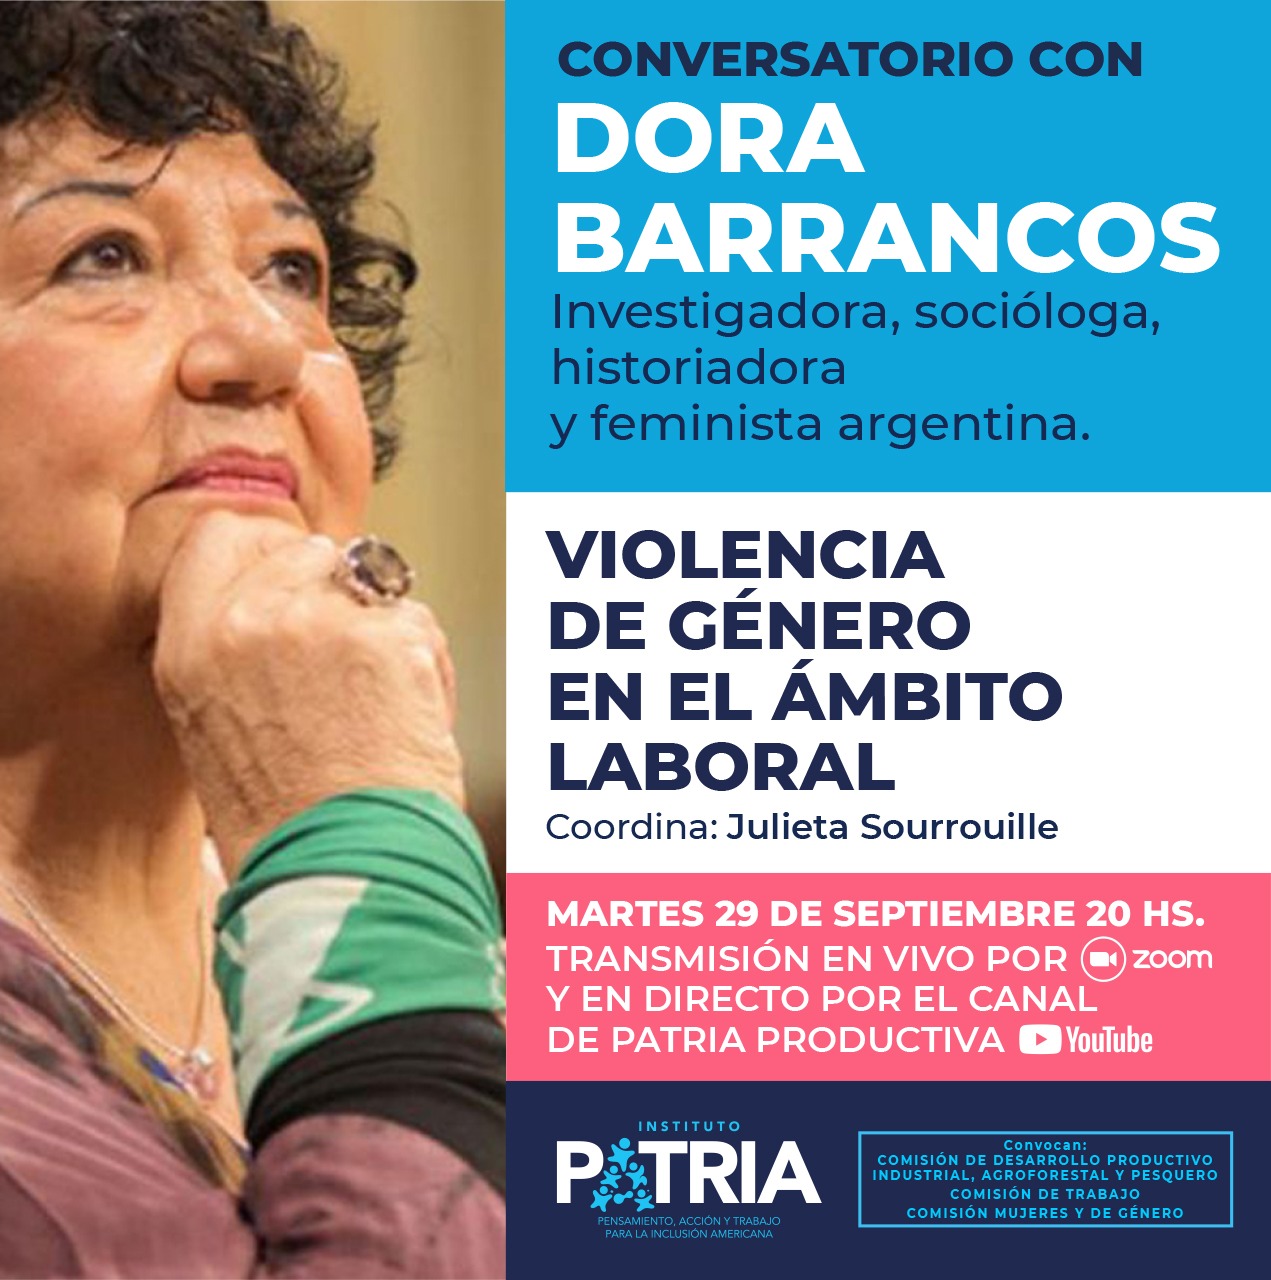 Conversatorio con Dora Barrancos